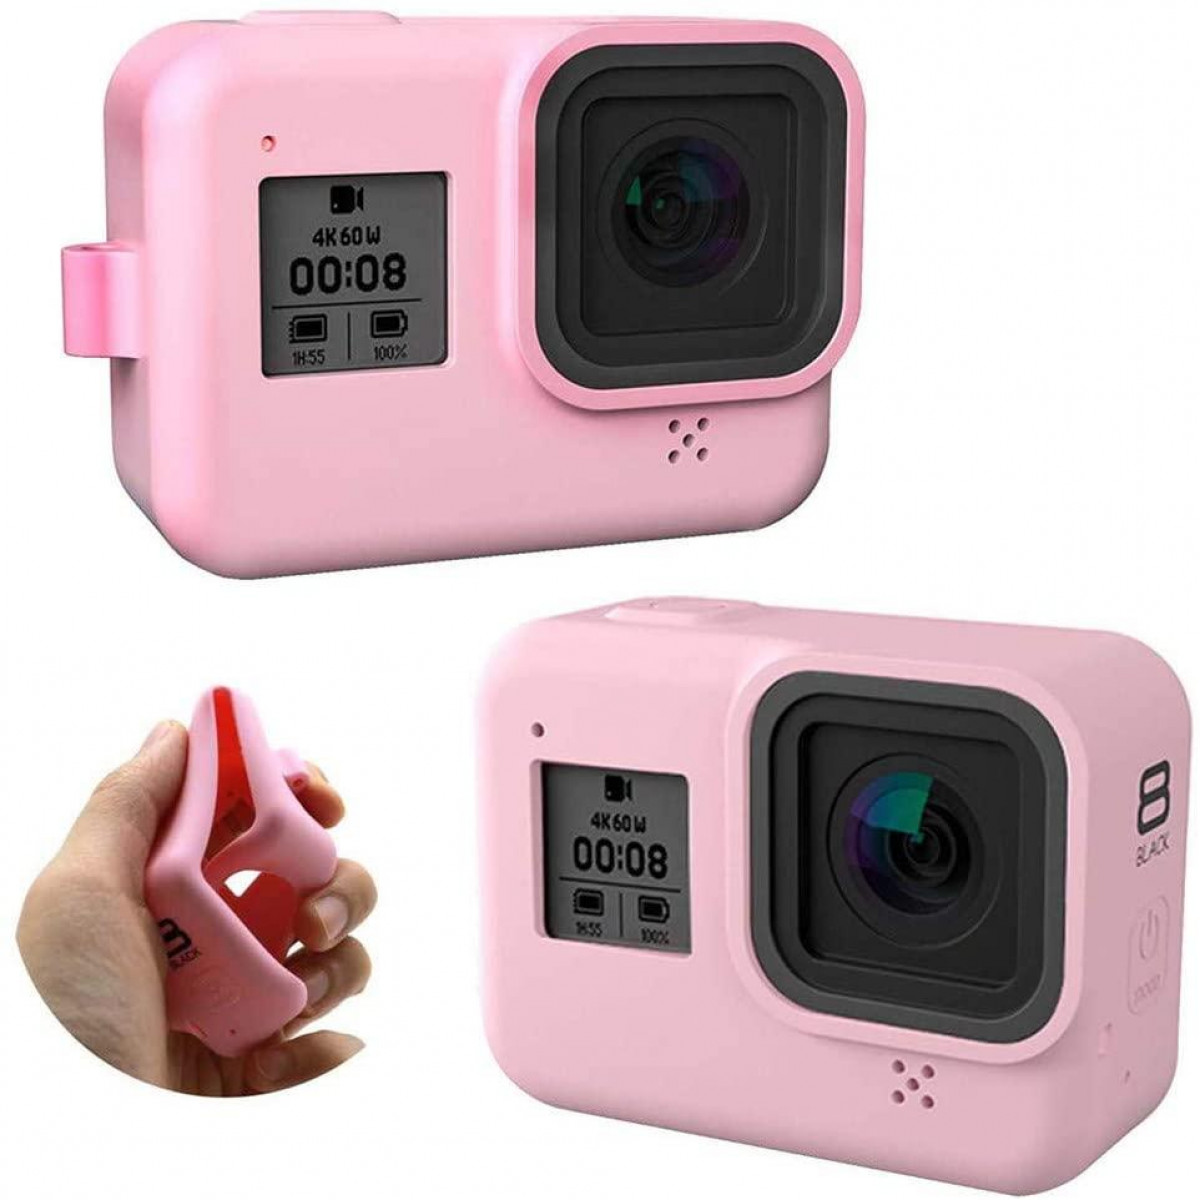 INF Silikonhülle und Zubehör für Kamera rosa Tasche, rosa Black - 8 GoPro Hero